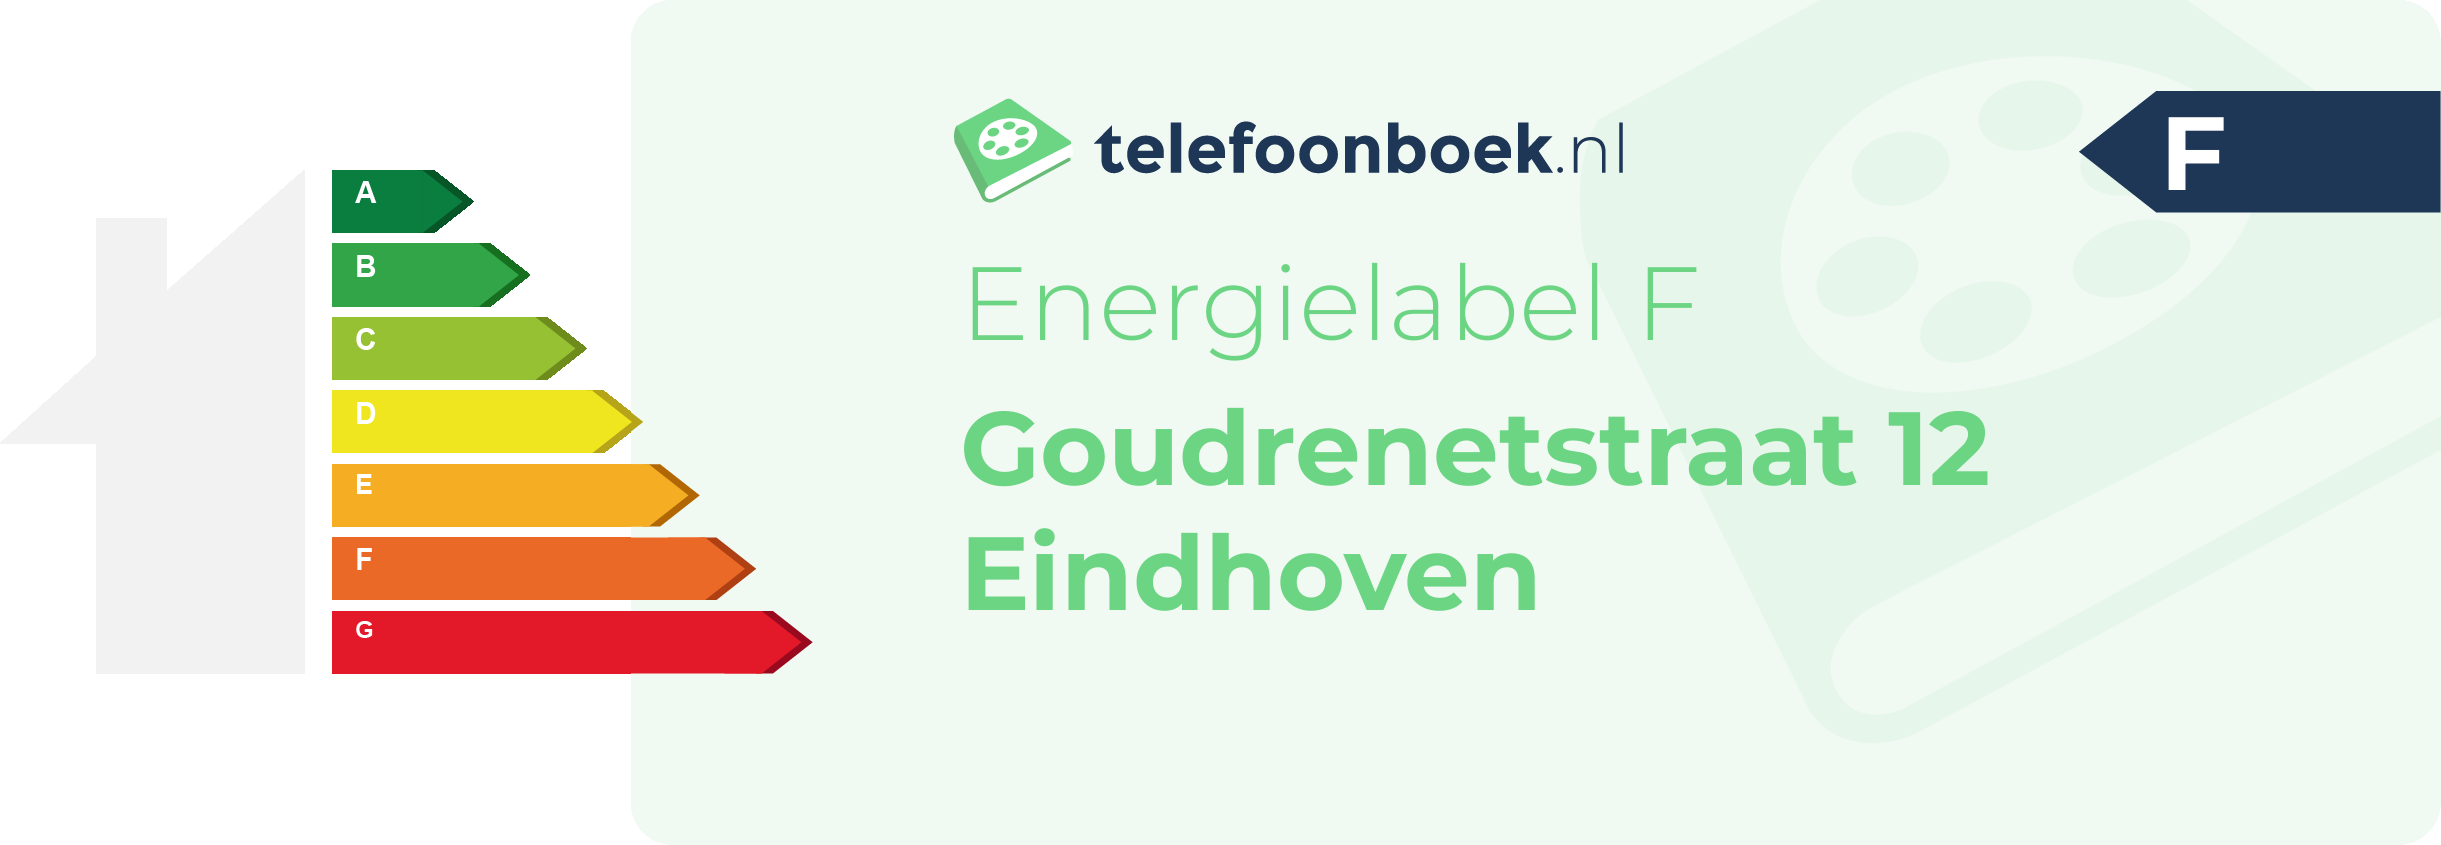 Energielabel Goudrenetstraat 12 Eindhoven